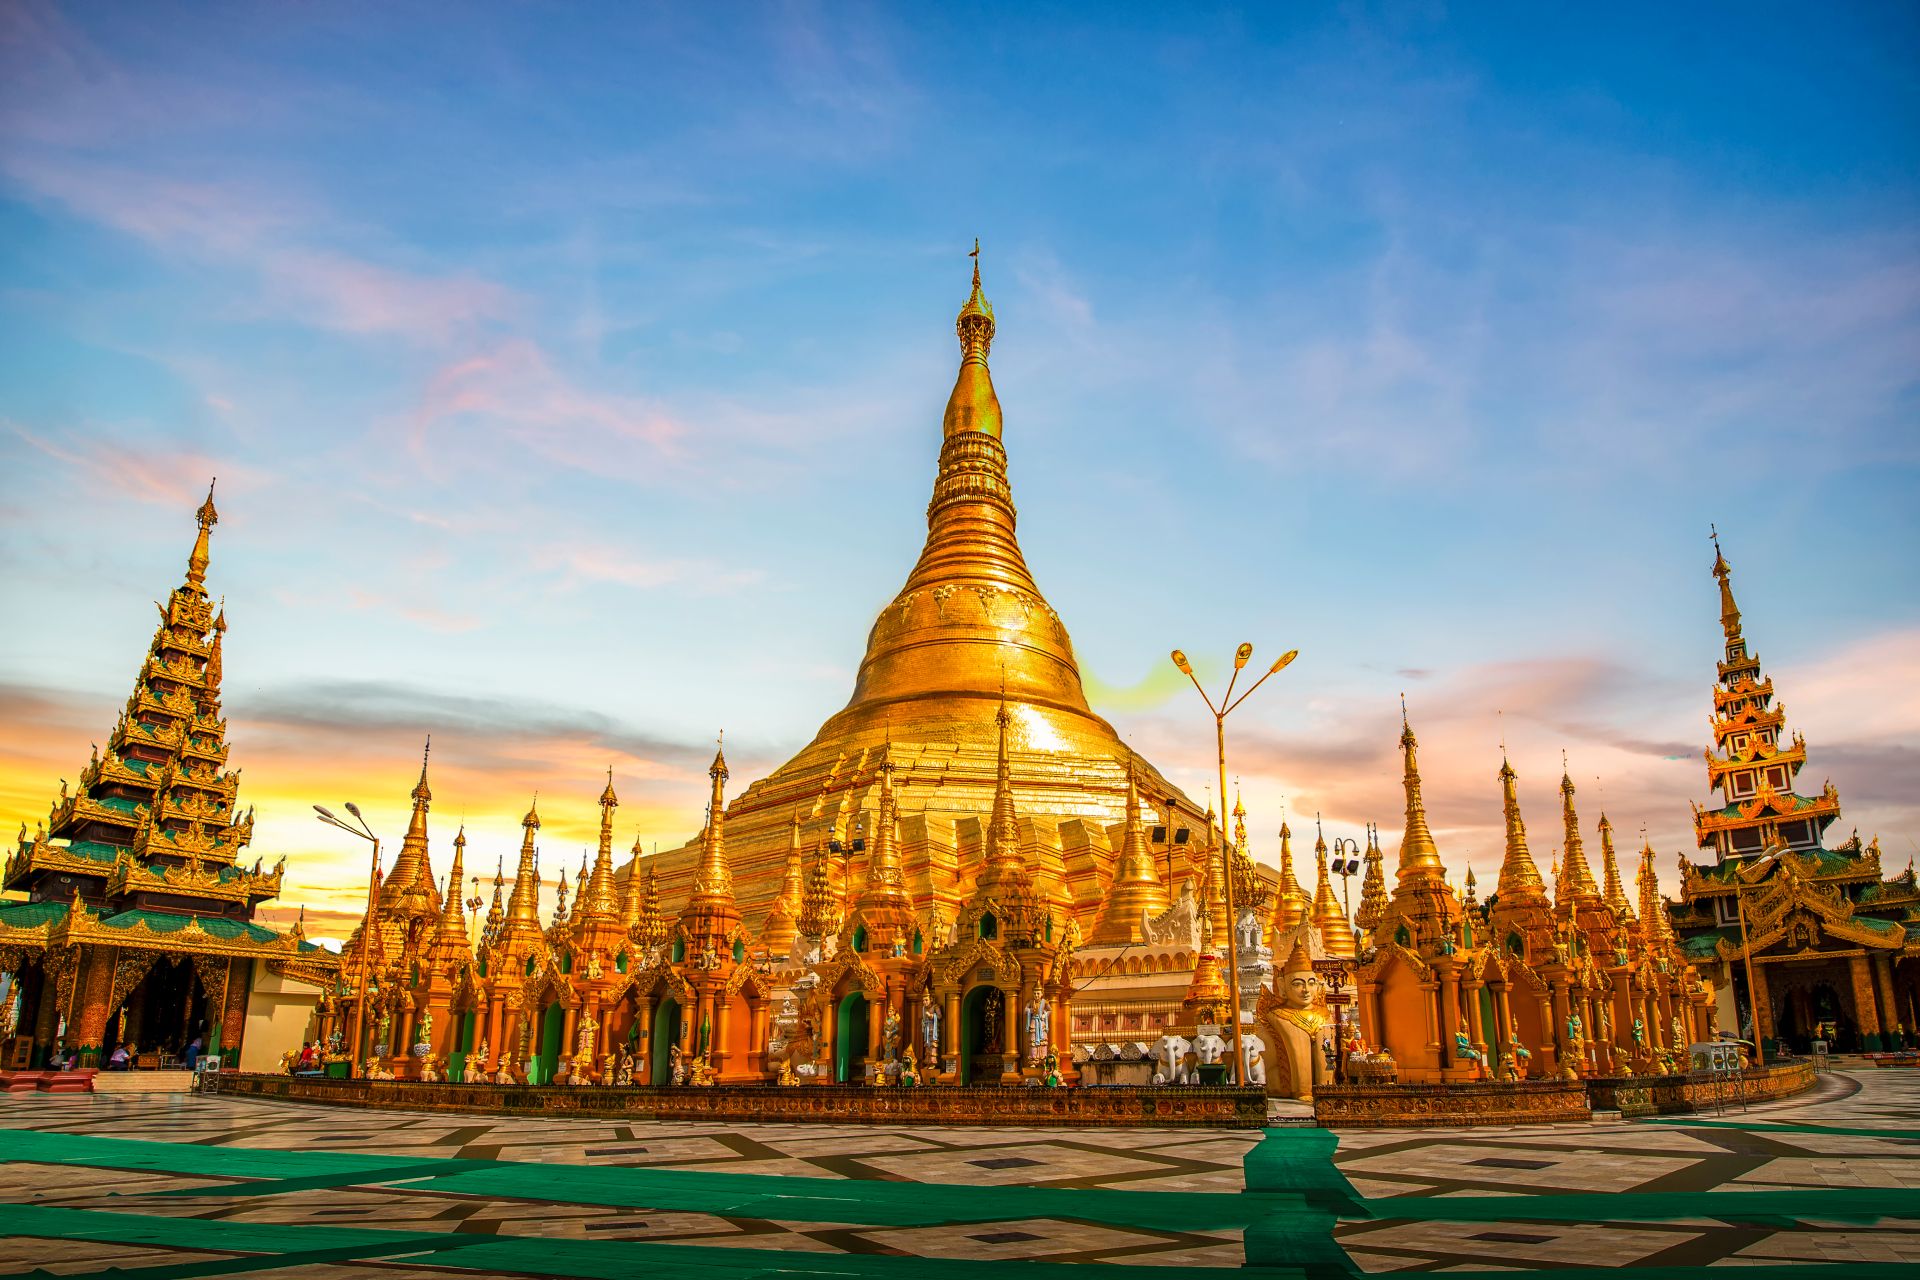 La pagoda Shwedagon al tramonto